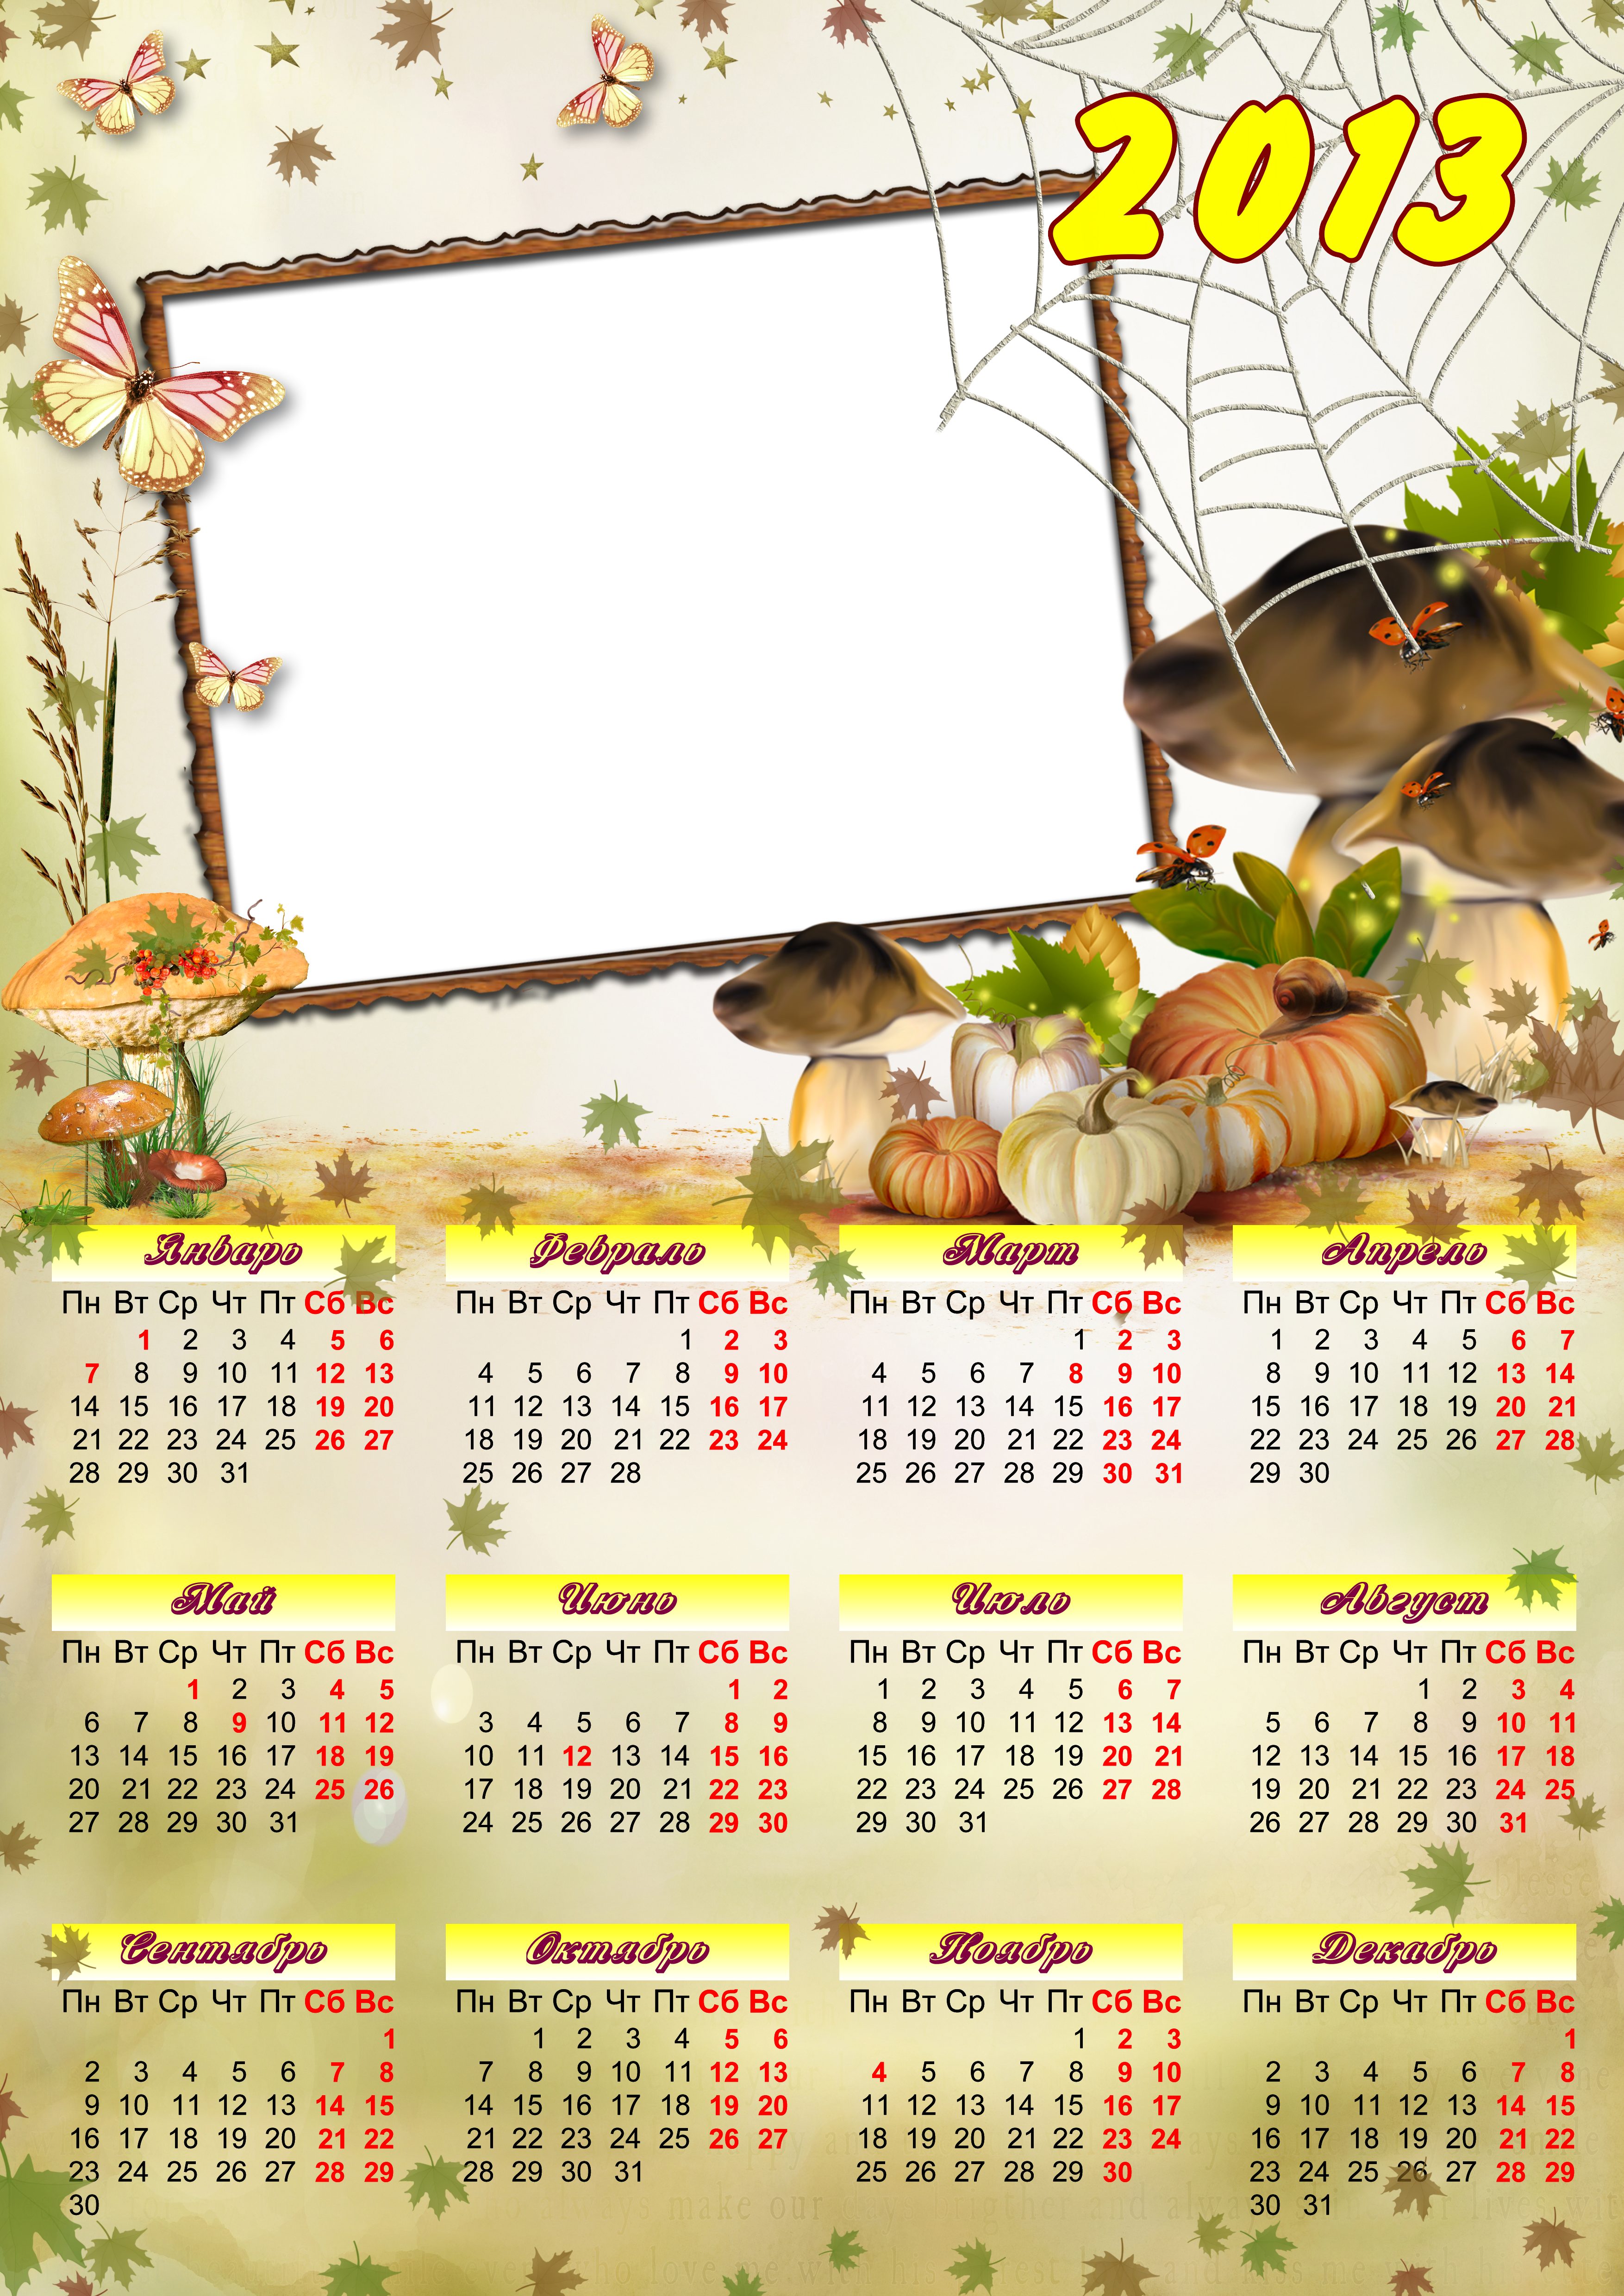 Foto - Kalendar gribi got 2013.png